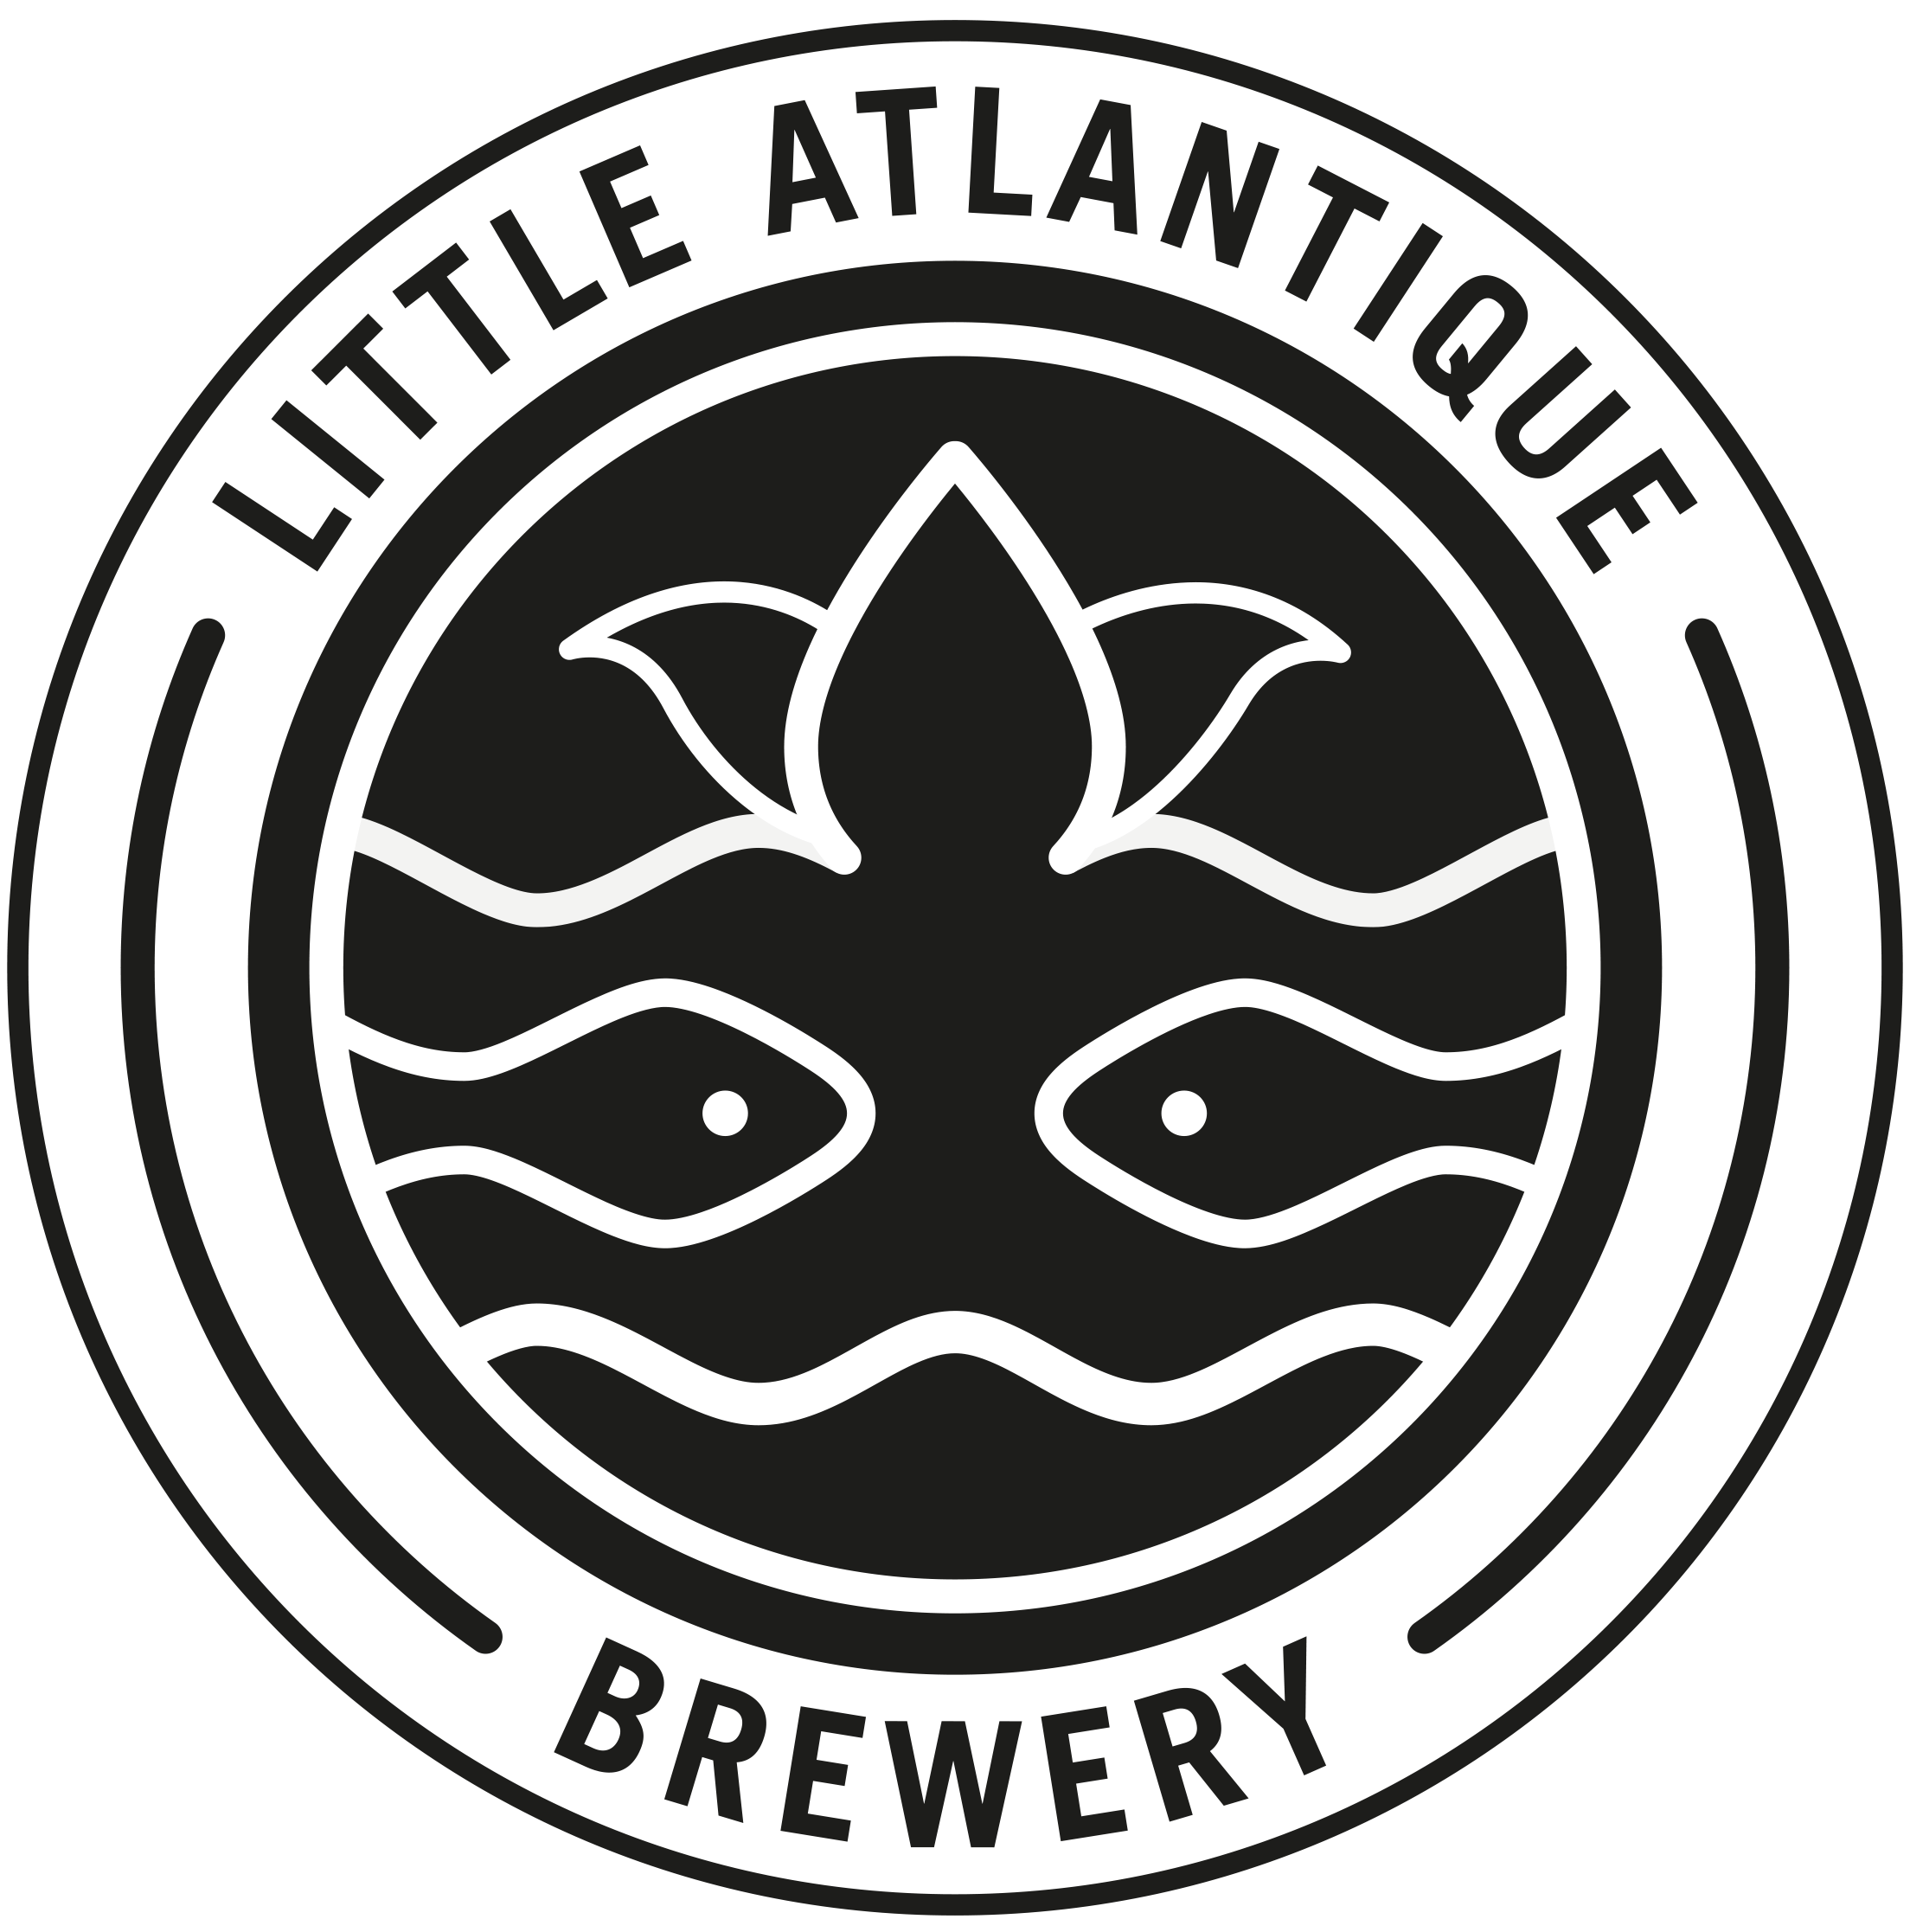 Little Attlantique Brewery